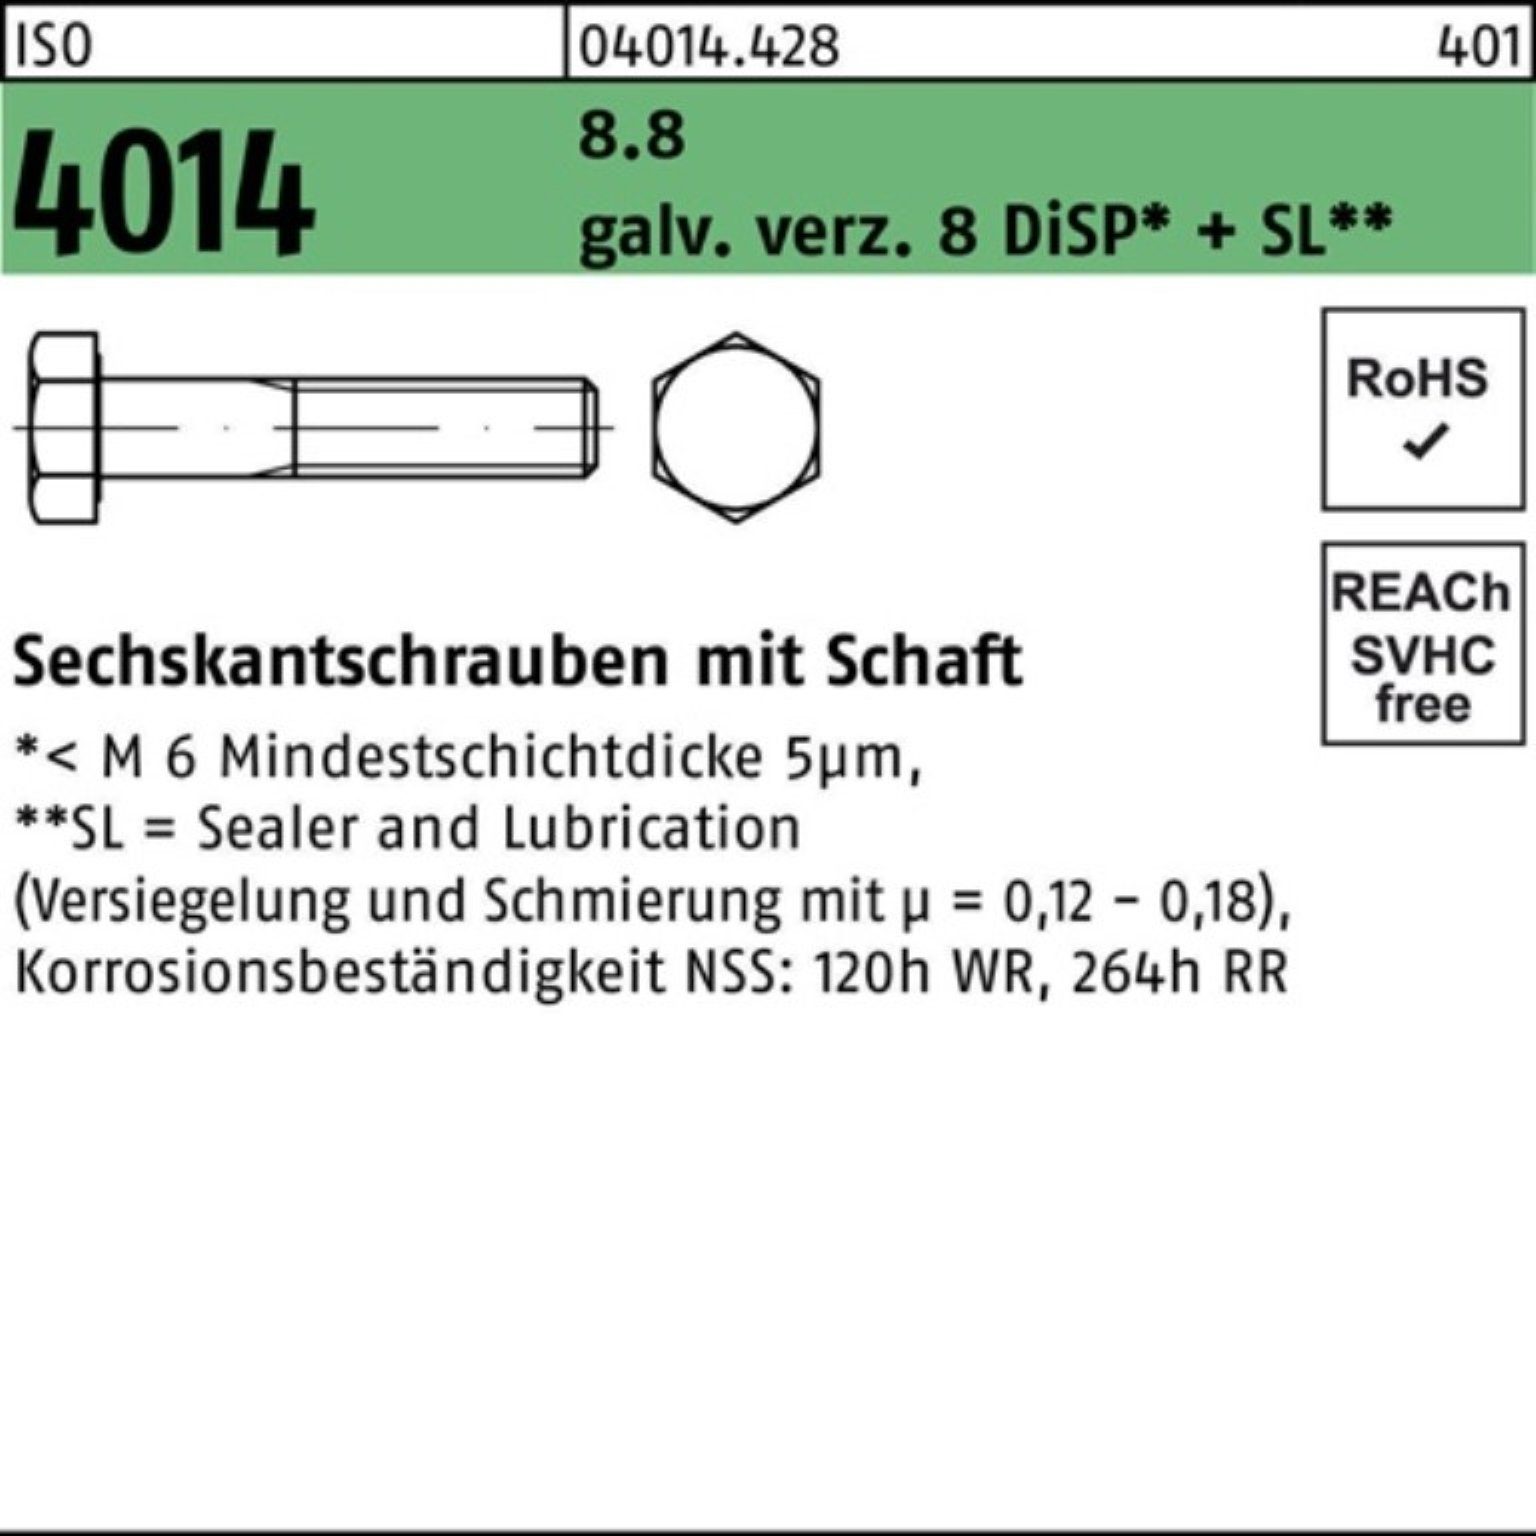 Bufab Sechskantschraube 100er Pack Sechskantschraube ISO 4014 Schaft M8x85 8.8 galv.verz. 8 Di